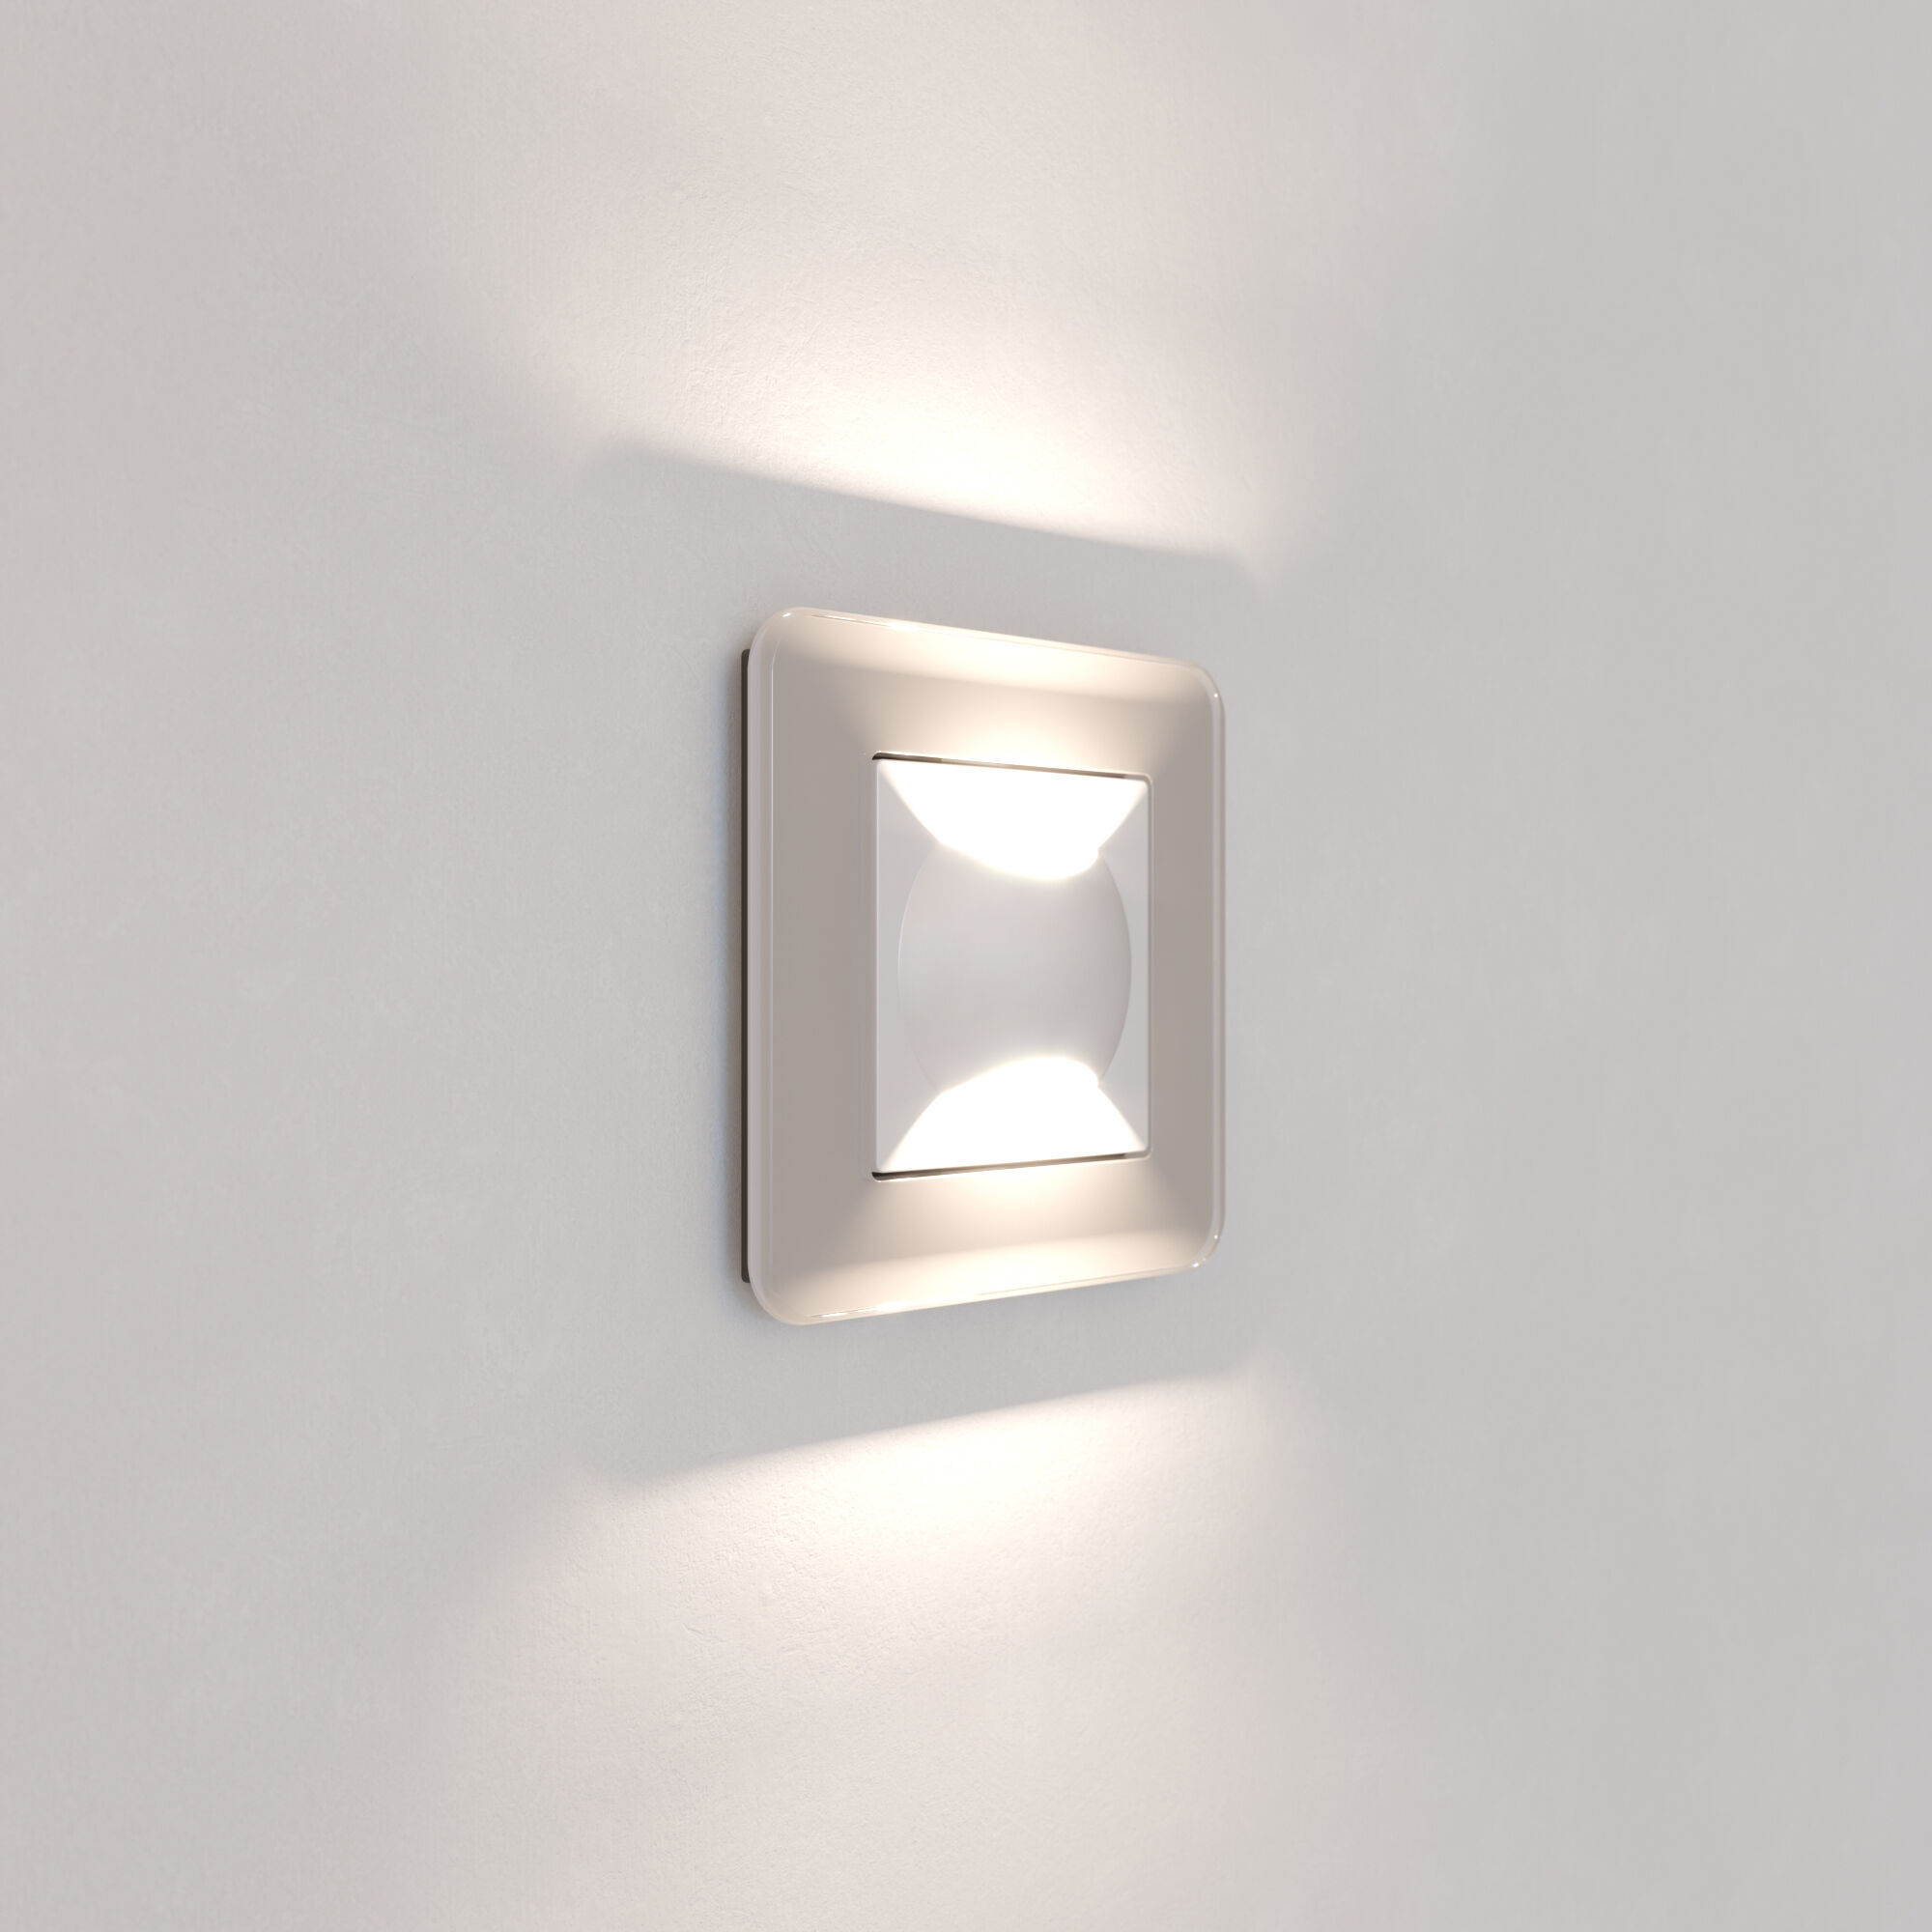 Встраиваемая LED подсветка МУН белый матовый Werkel Встраиваемые механизмы белые матовые W1154501. Фото 4